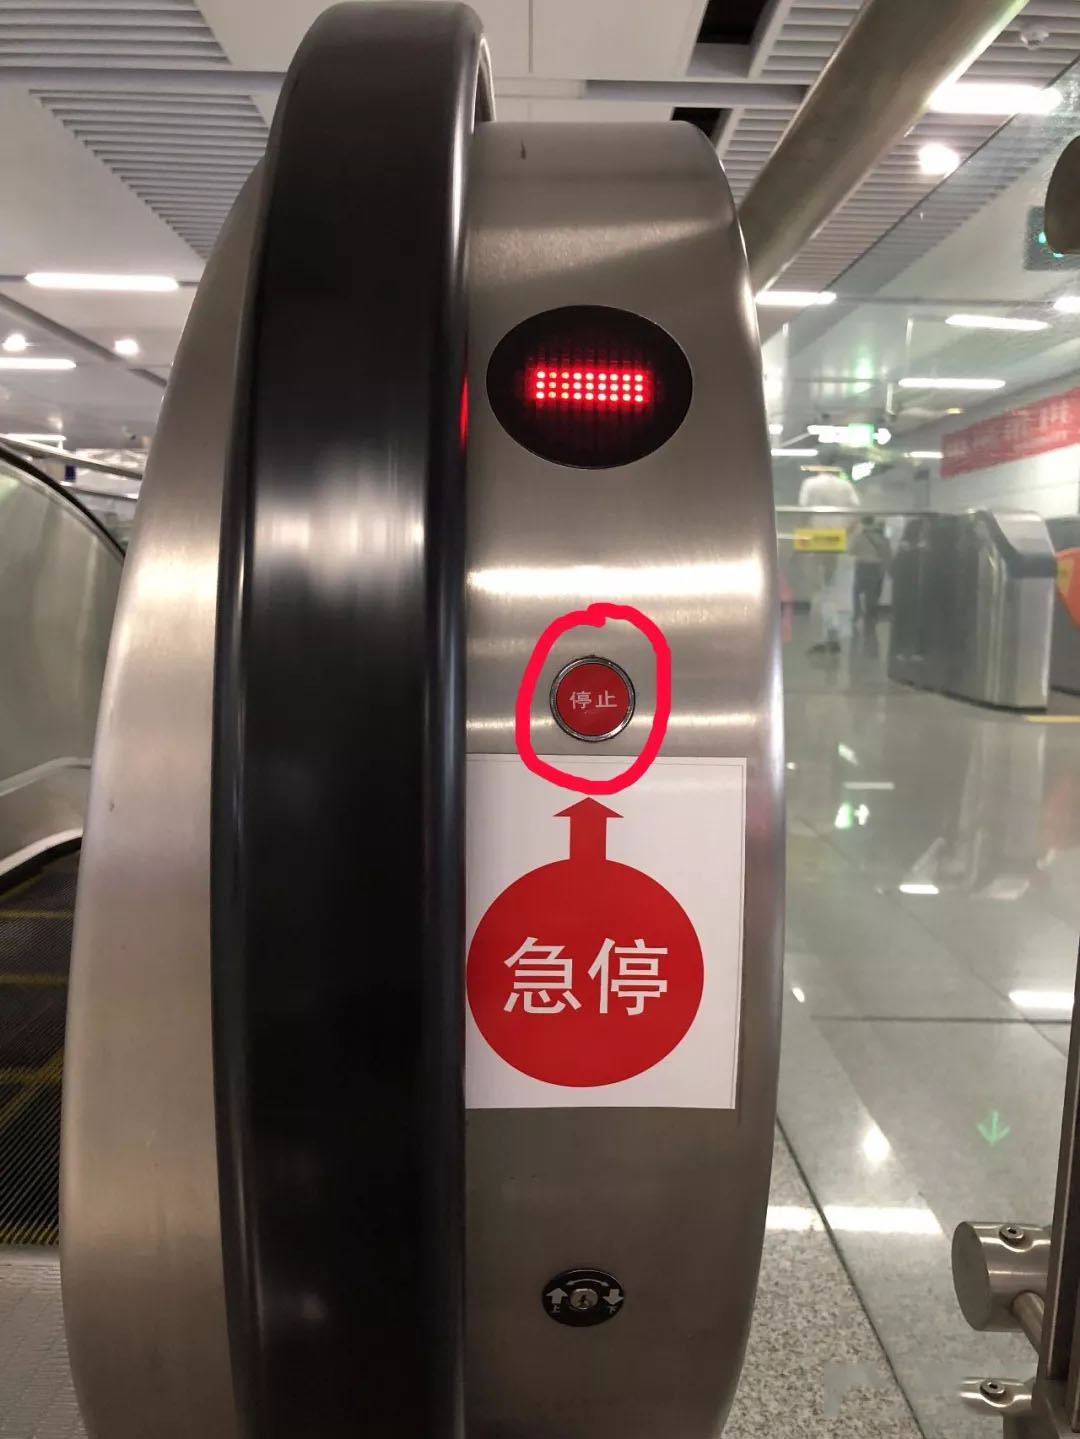 湖南电梯公司:自动扶急停按钮